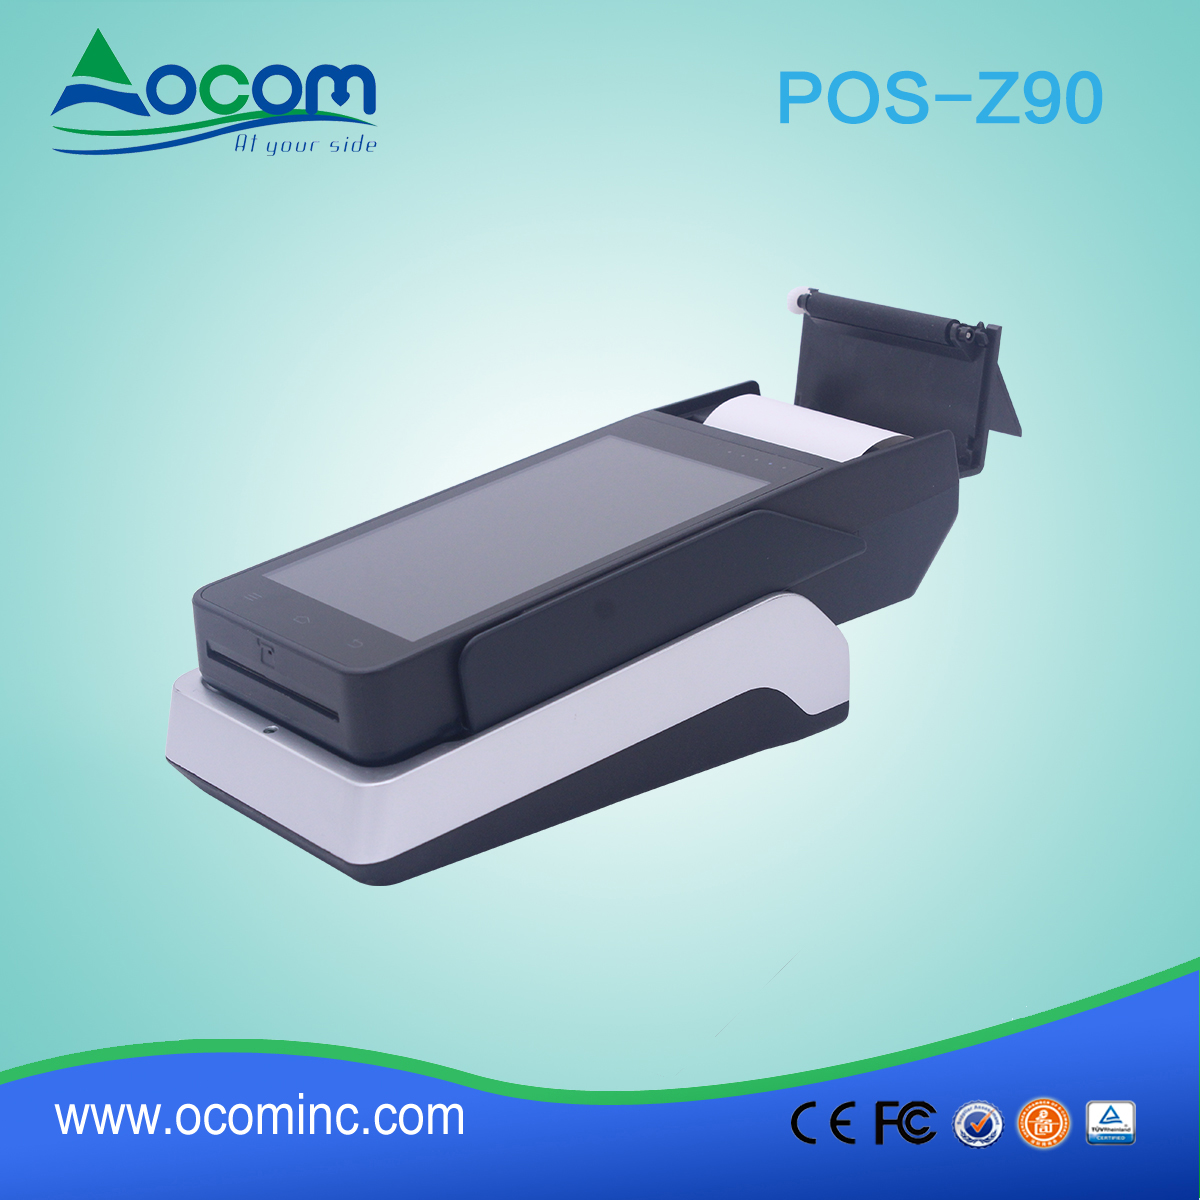 OCOM POS -Z90 terminal pos Android tout-en-un avec imprimante et lecteur nfc